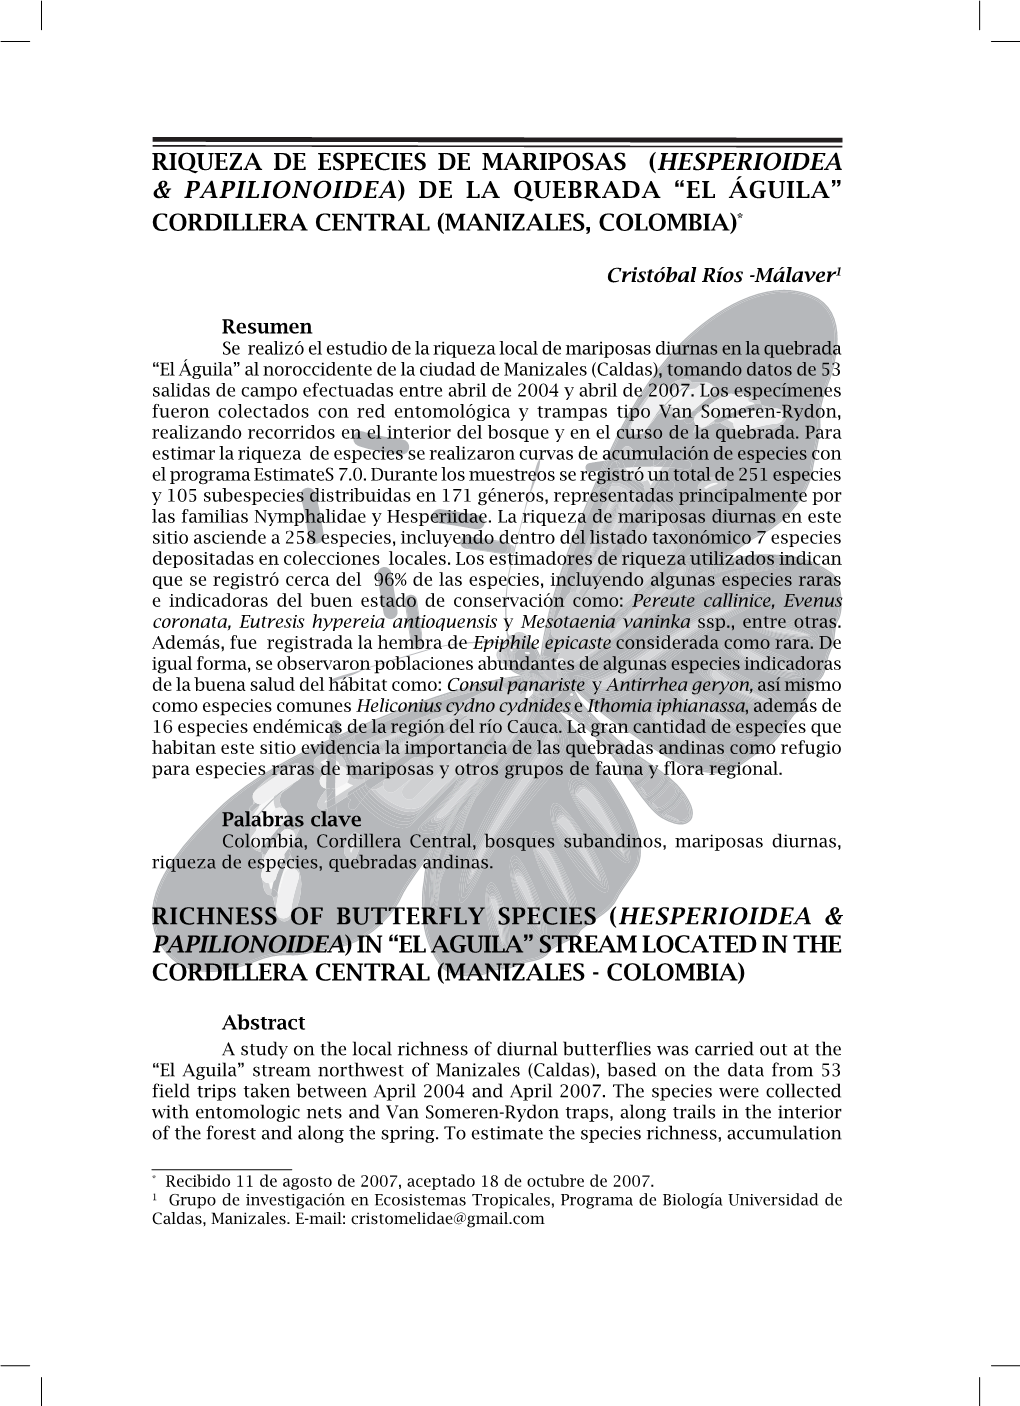 Riqueza De Especies De Mariposas (Hesperioidea & Papilionoidea) De La Quebrada “El Águila” Cordillera Central (Manizales, Colombia)*